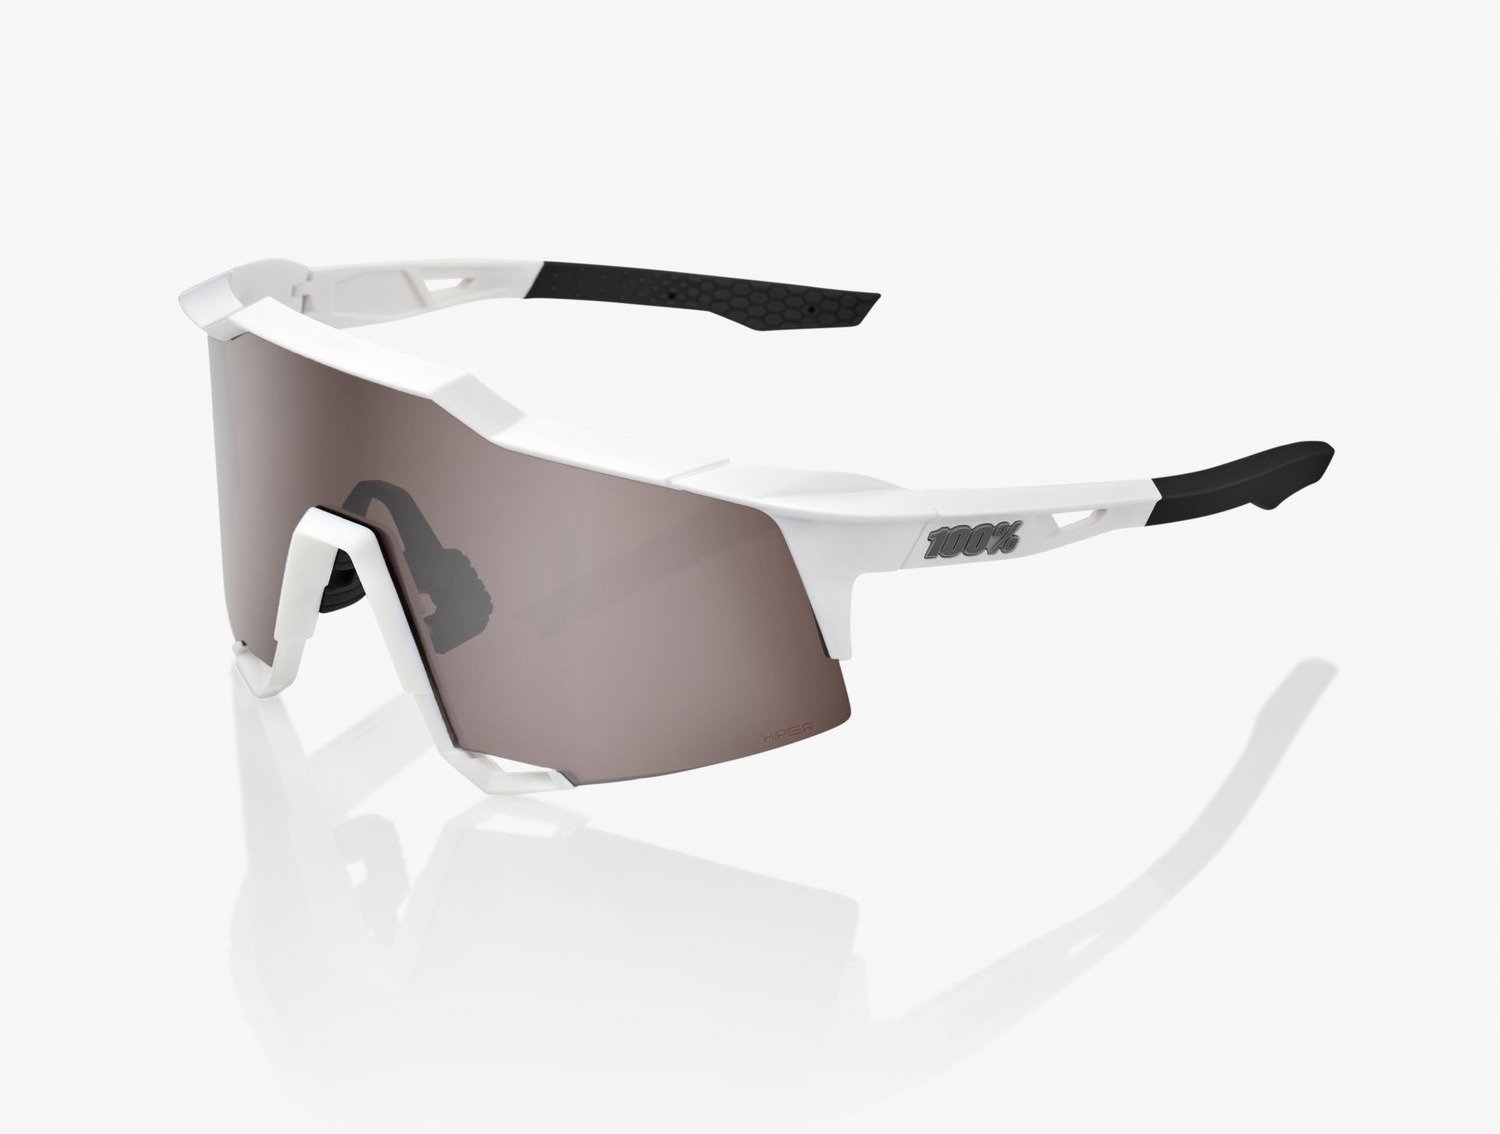 Obrázek produktu sluneční brýle SPEEDCRAFT, 100% (HIPER srříbrné sklo) 61001-404-03